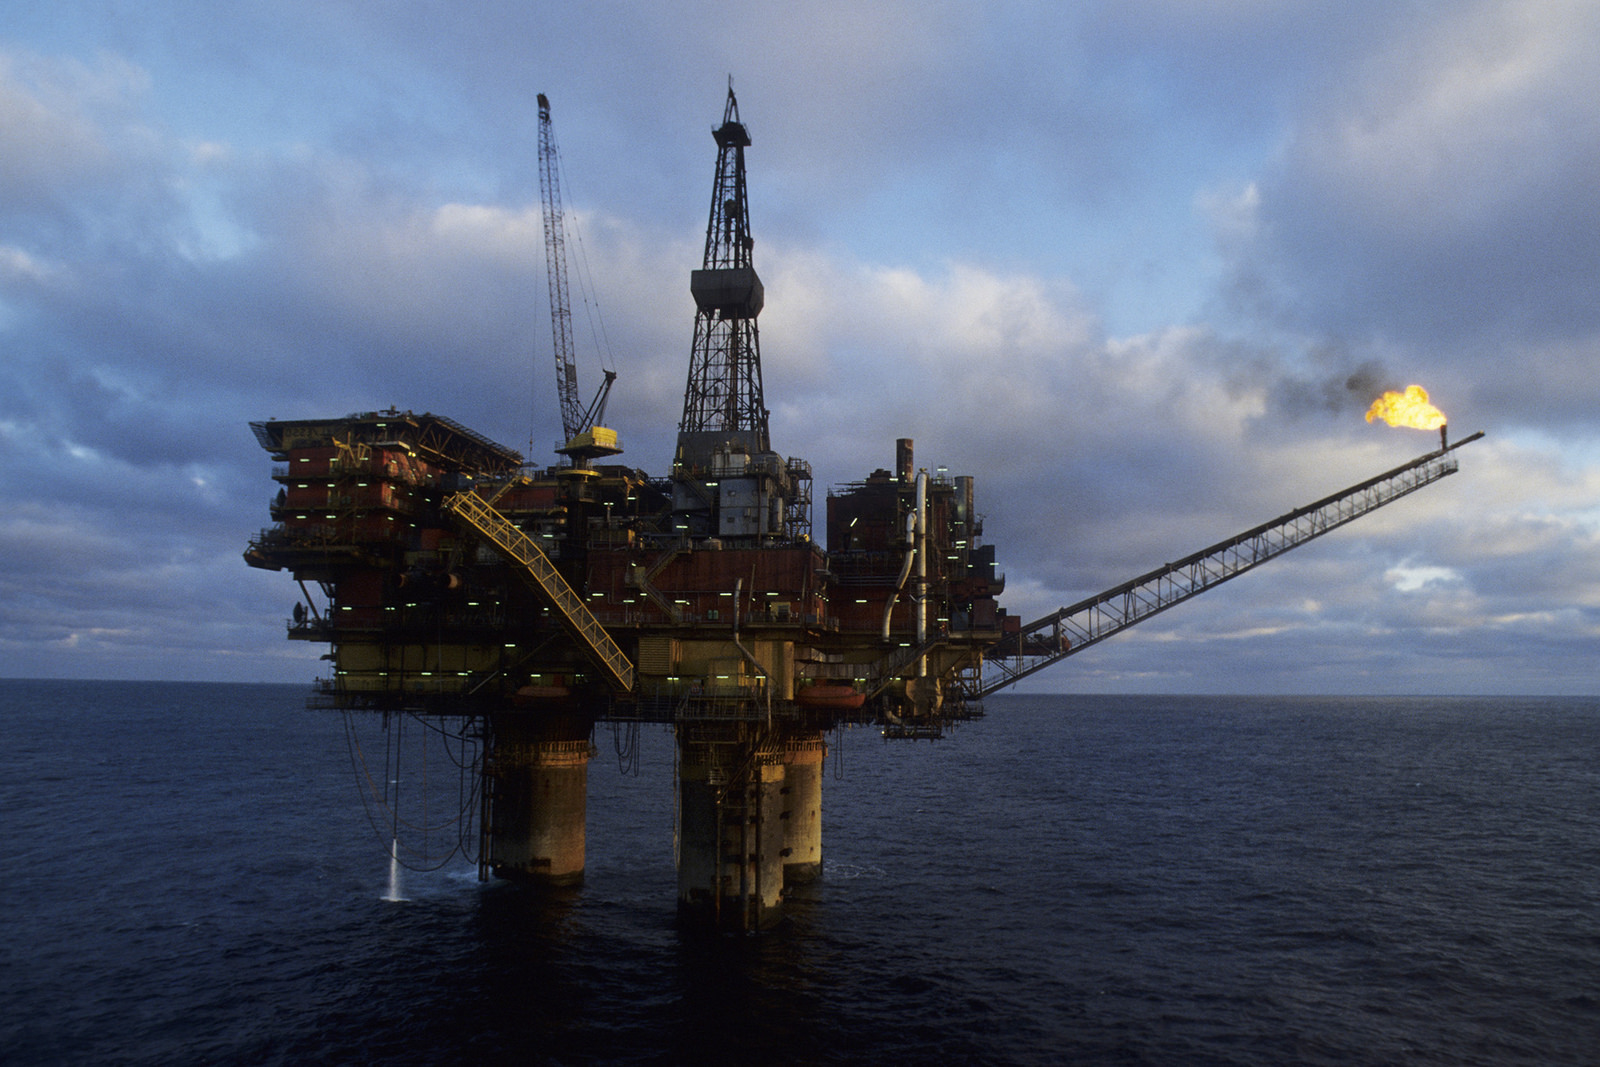 النفط يتراجع مع توقعات بزيادة الصادرات الروسية